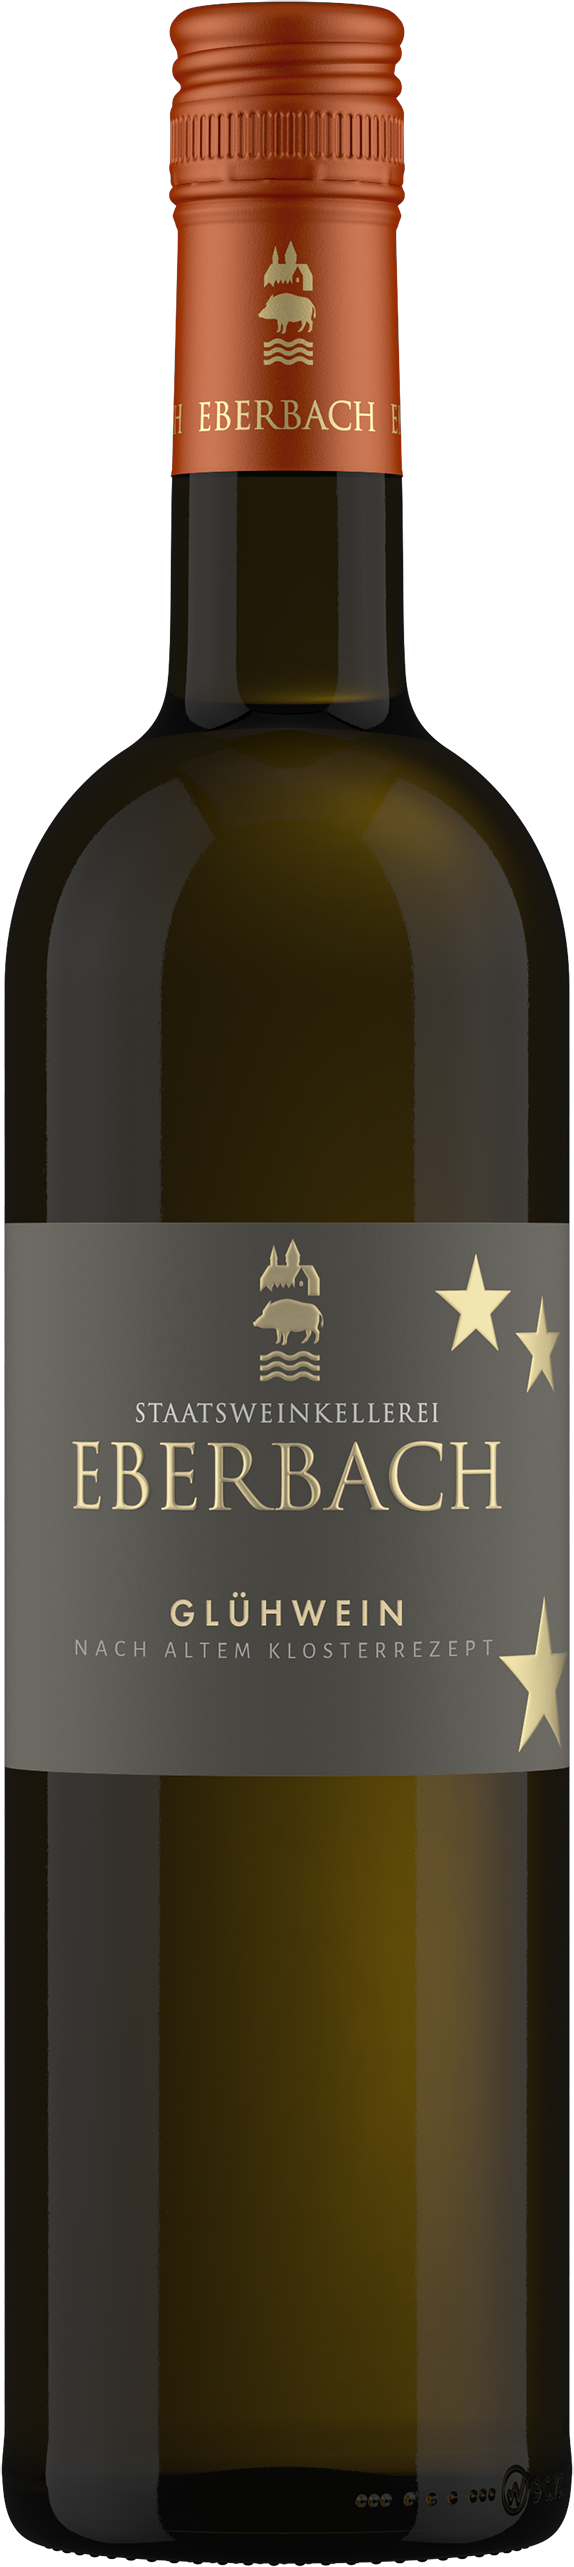 Kloster Eberbach Wein online kaufen bestellen 